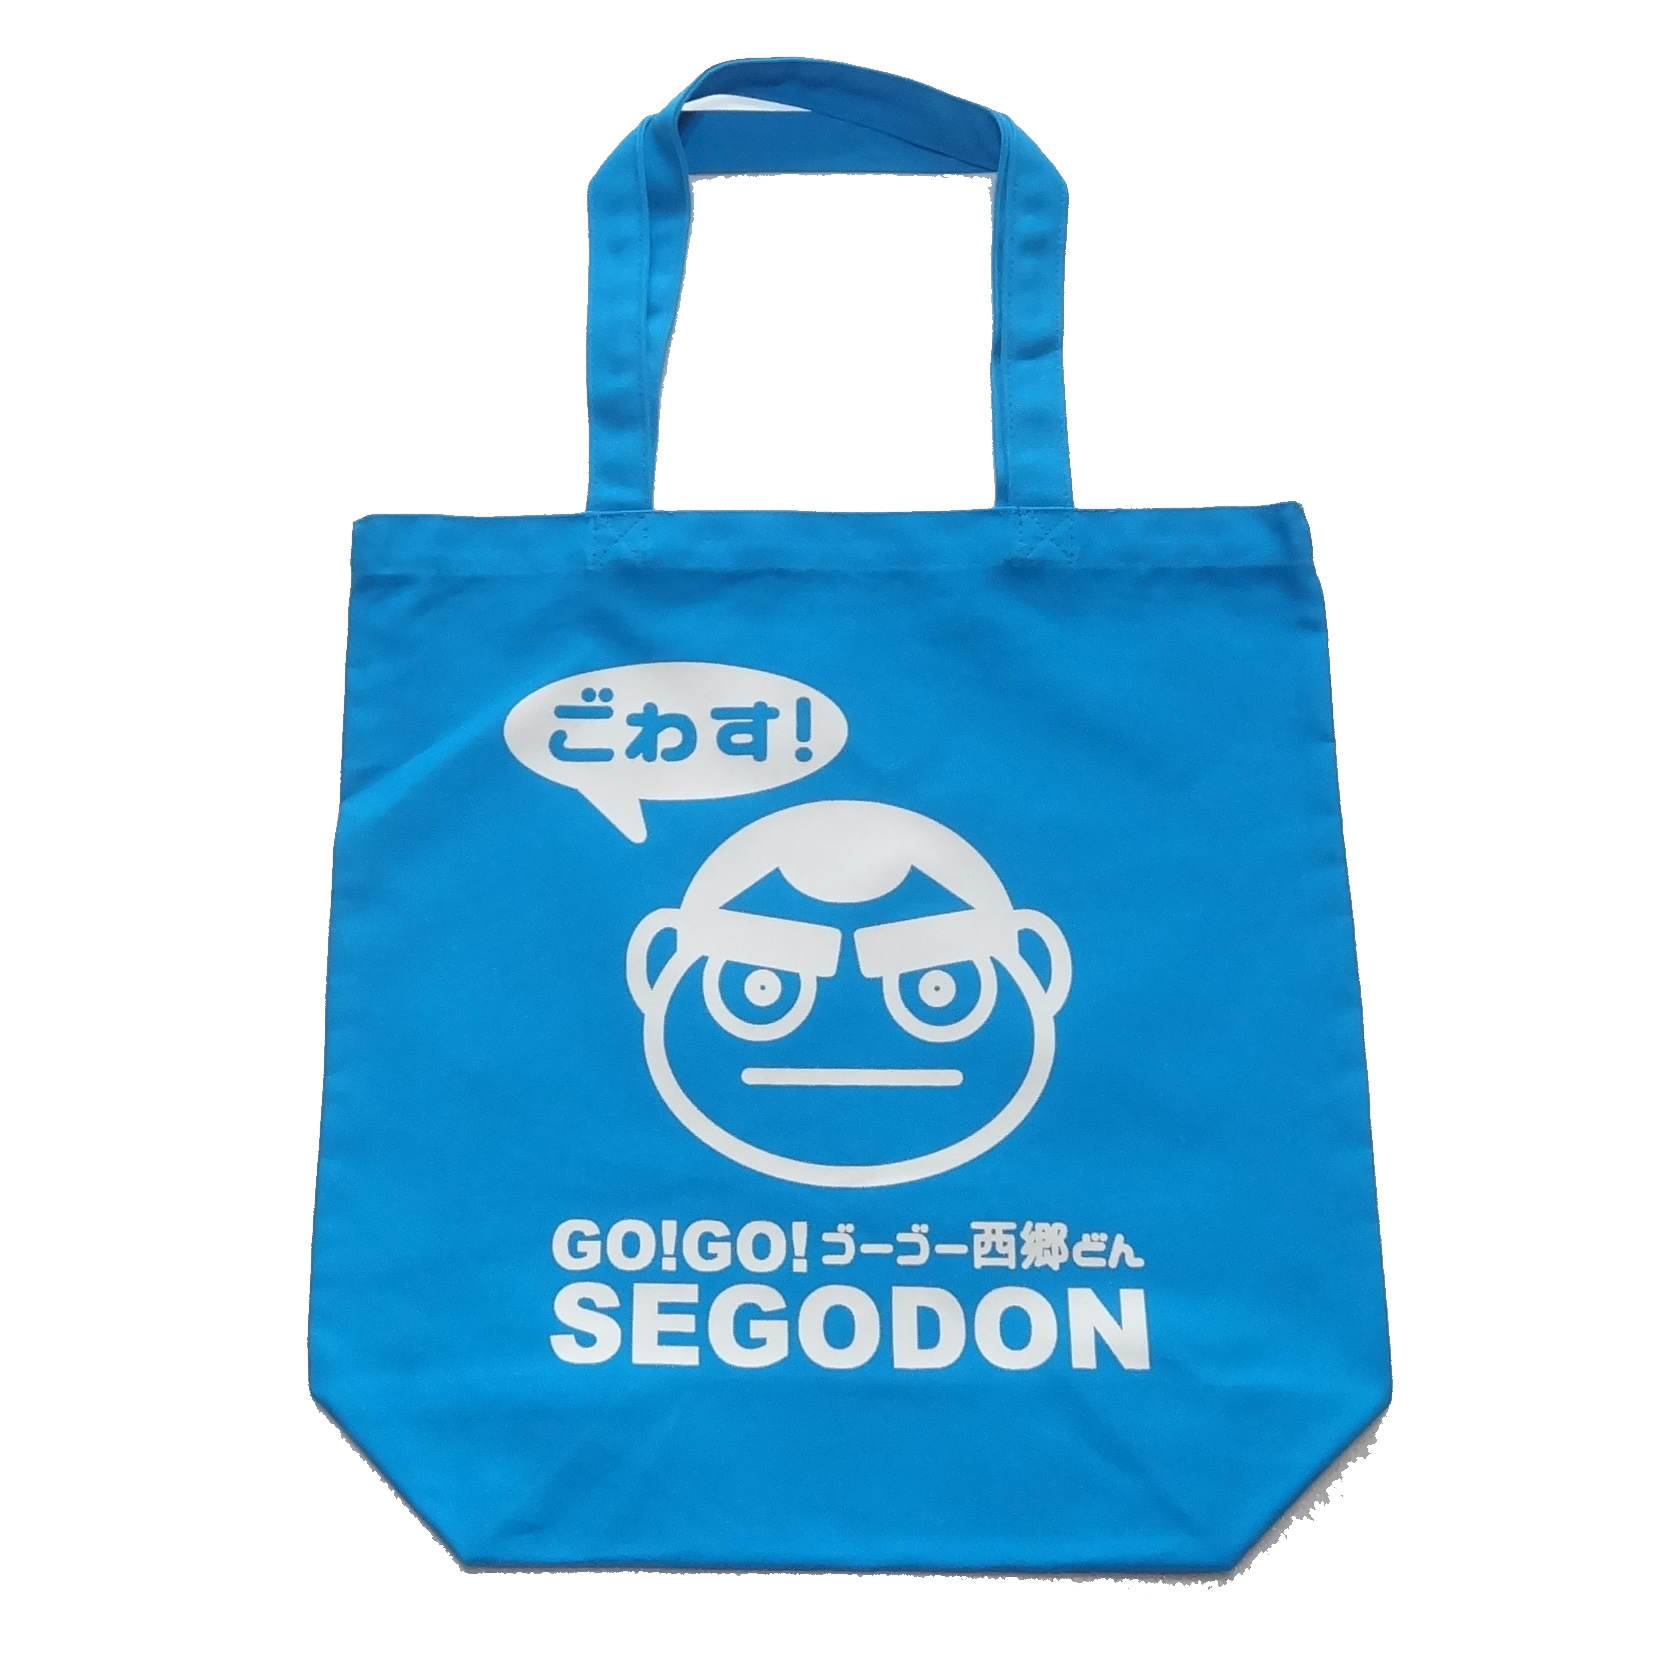 【GO!GO! SEGODON】 エコバッグ (手提げ・トート) 鹿児島の空 ターコイズ 【西郷どん・ゆるキャラ・グッズ】